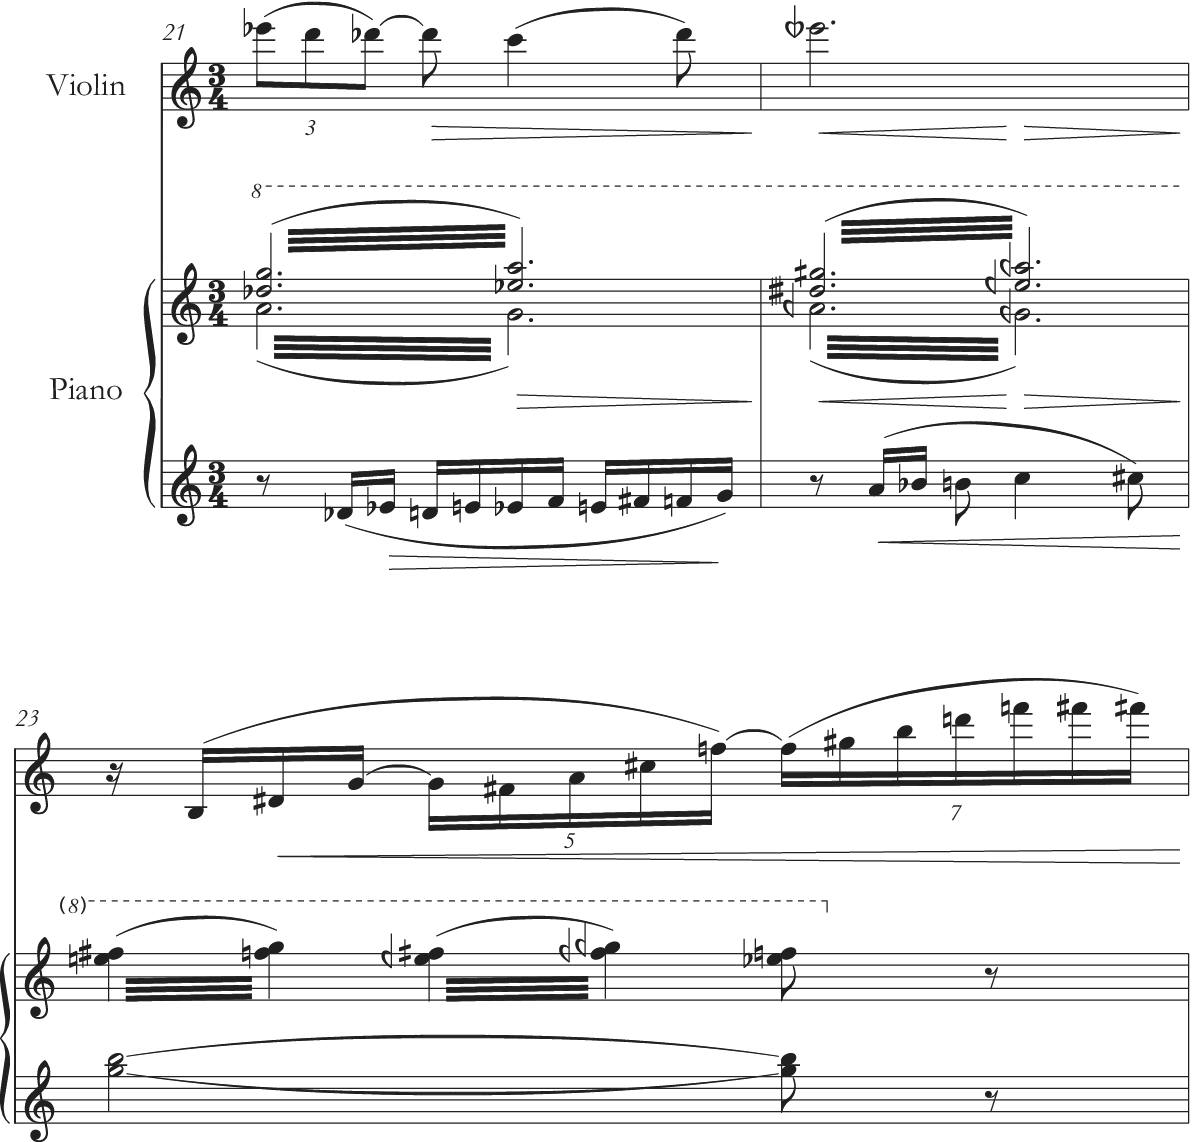 Lugar secreto Sheet music for Piano (Solo) Easy